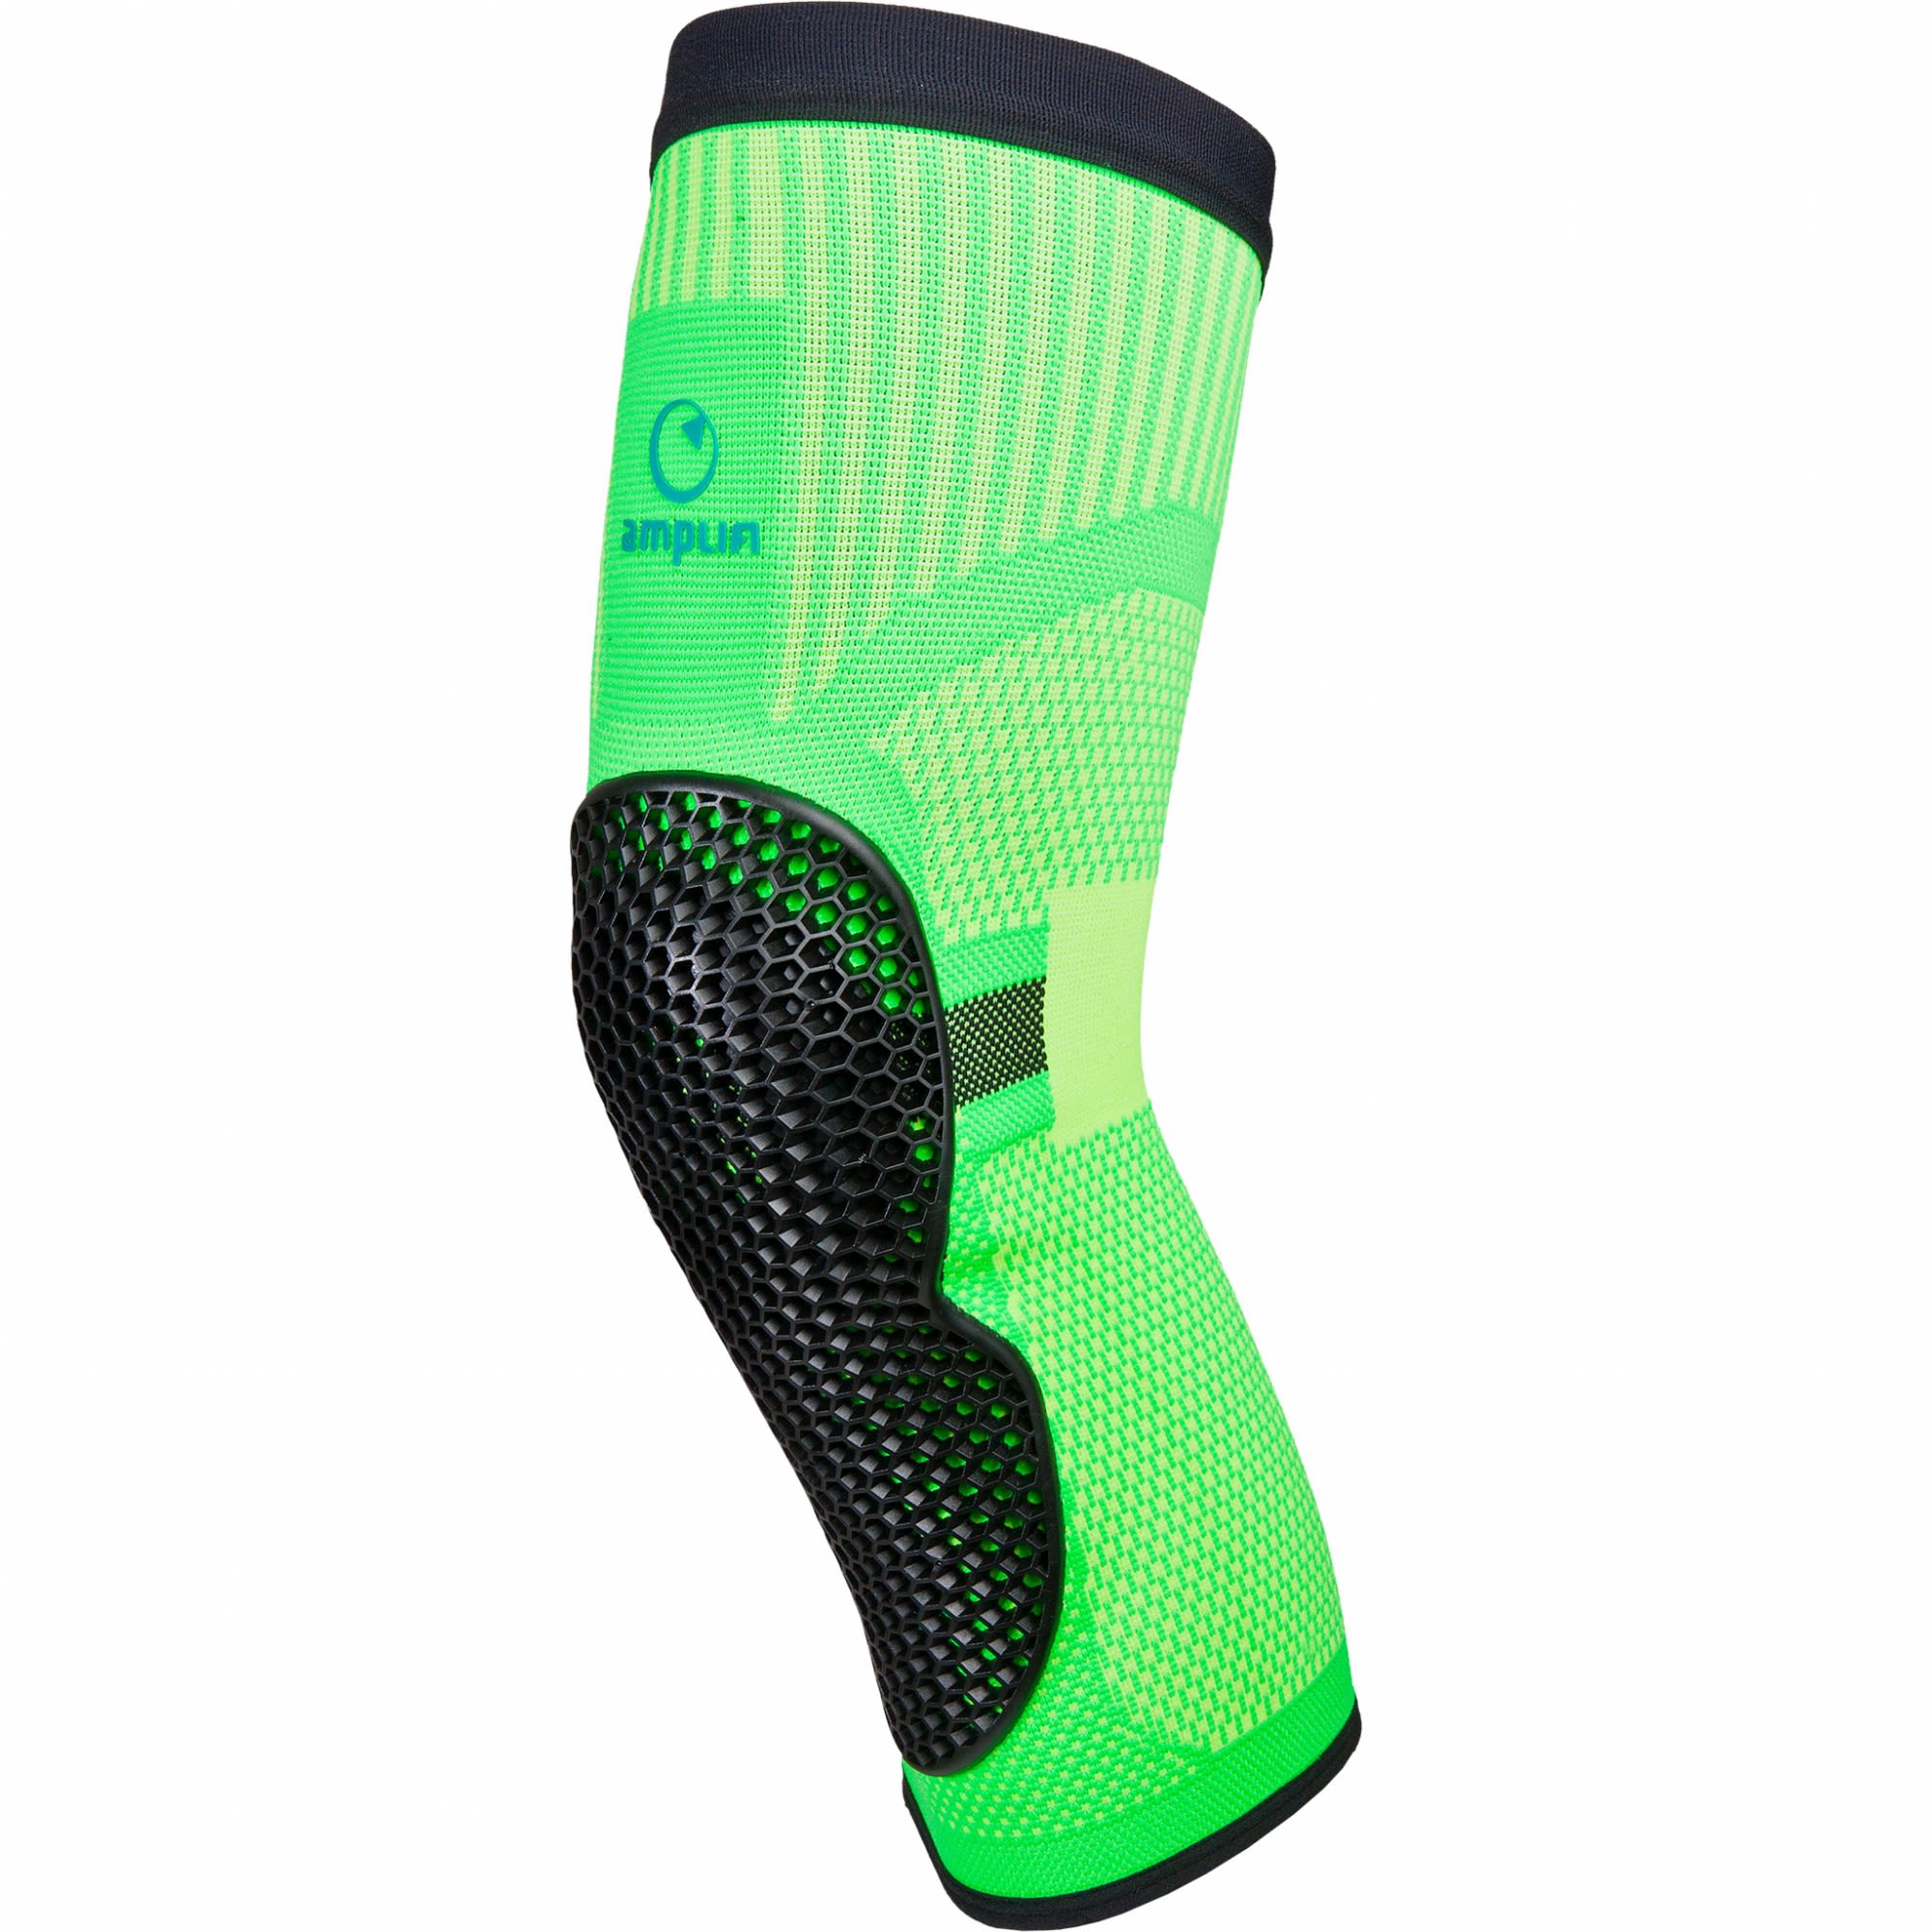 Amplifi MKX Knee Grn- Knieprotektoren- Grsse S - Farbe Phosphor Green